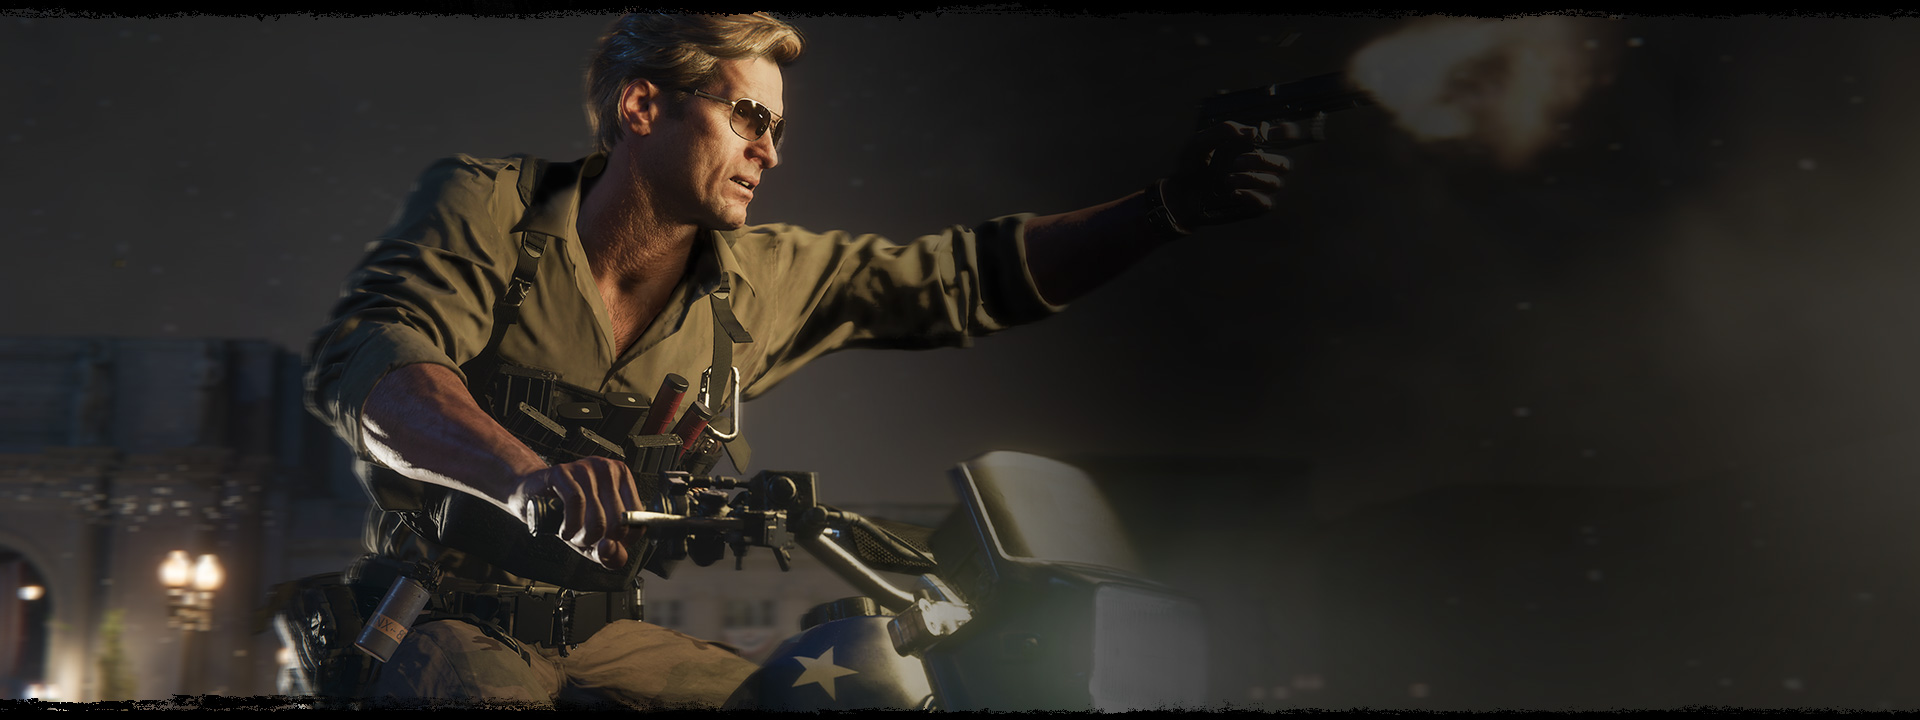 Un personaje dispara una pistola mientras conduce una motocicleta con el patrón de la bandera estadounidense.